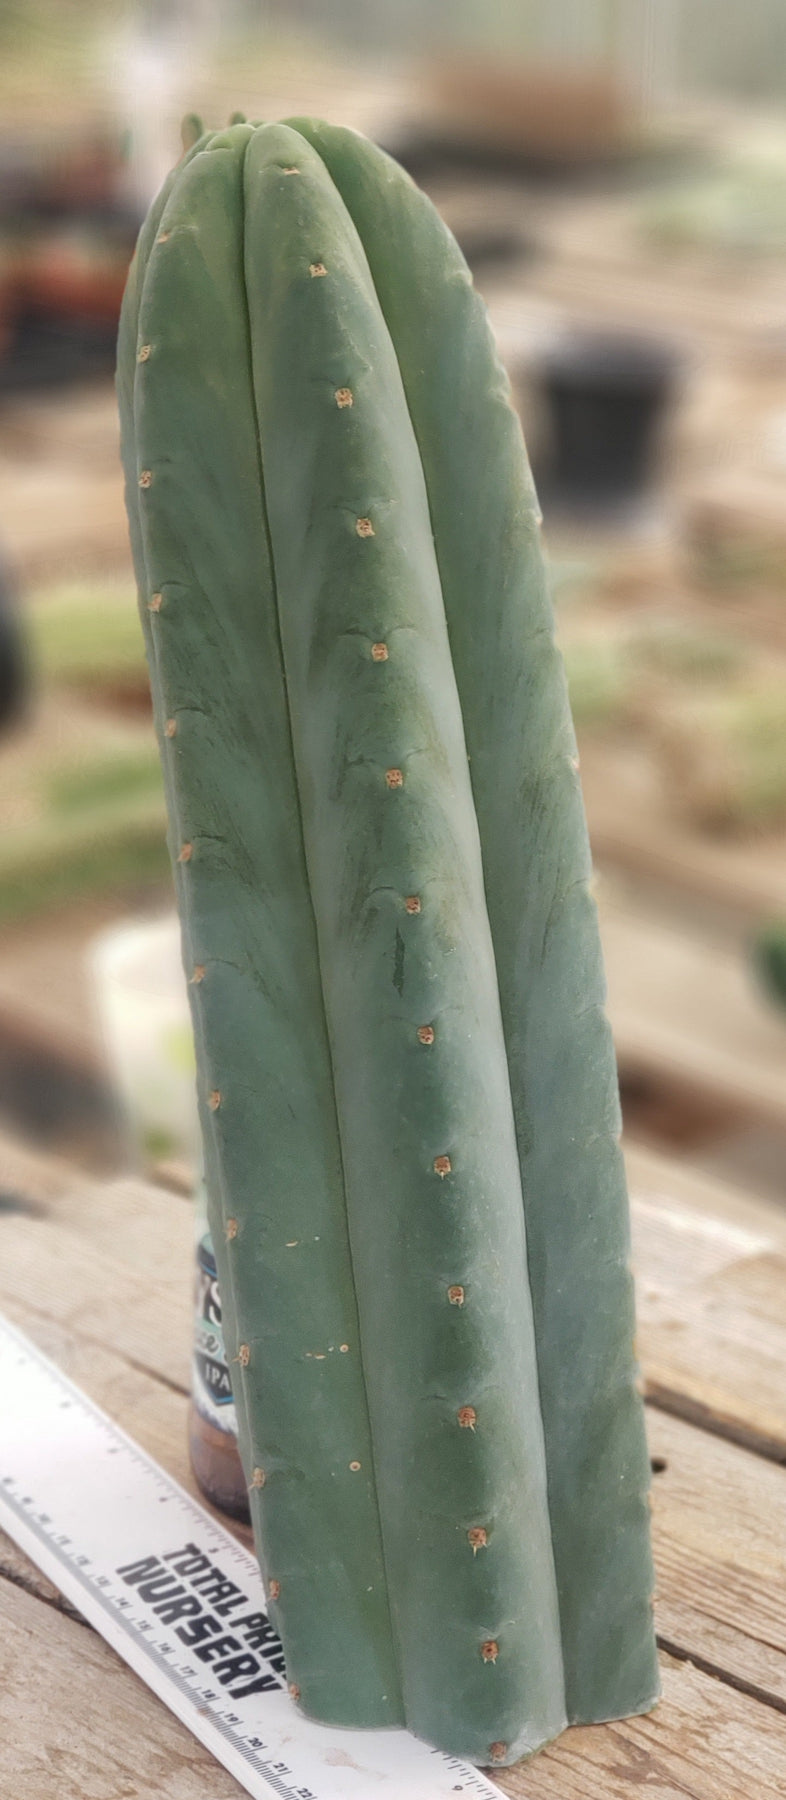 #EC200 EXACT Trichocereus Pachanoi BGH Cactus cutting